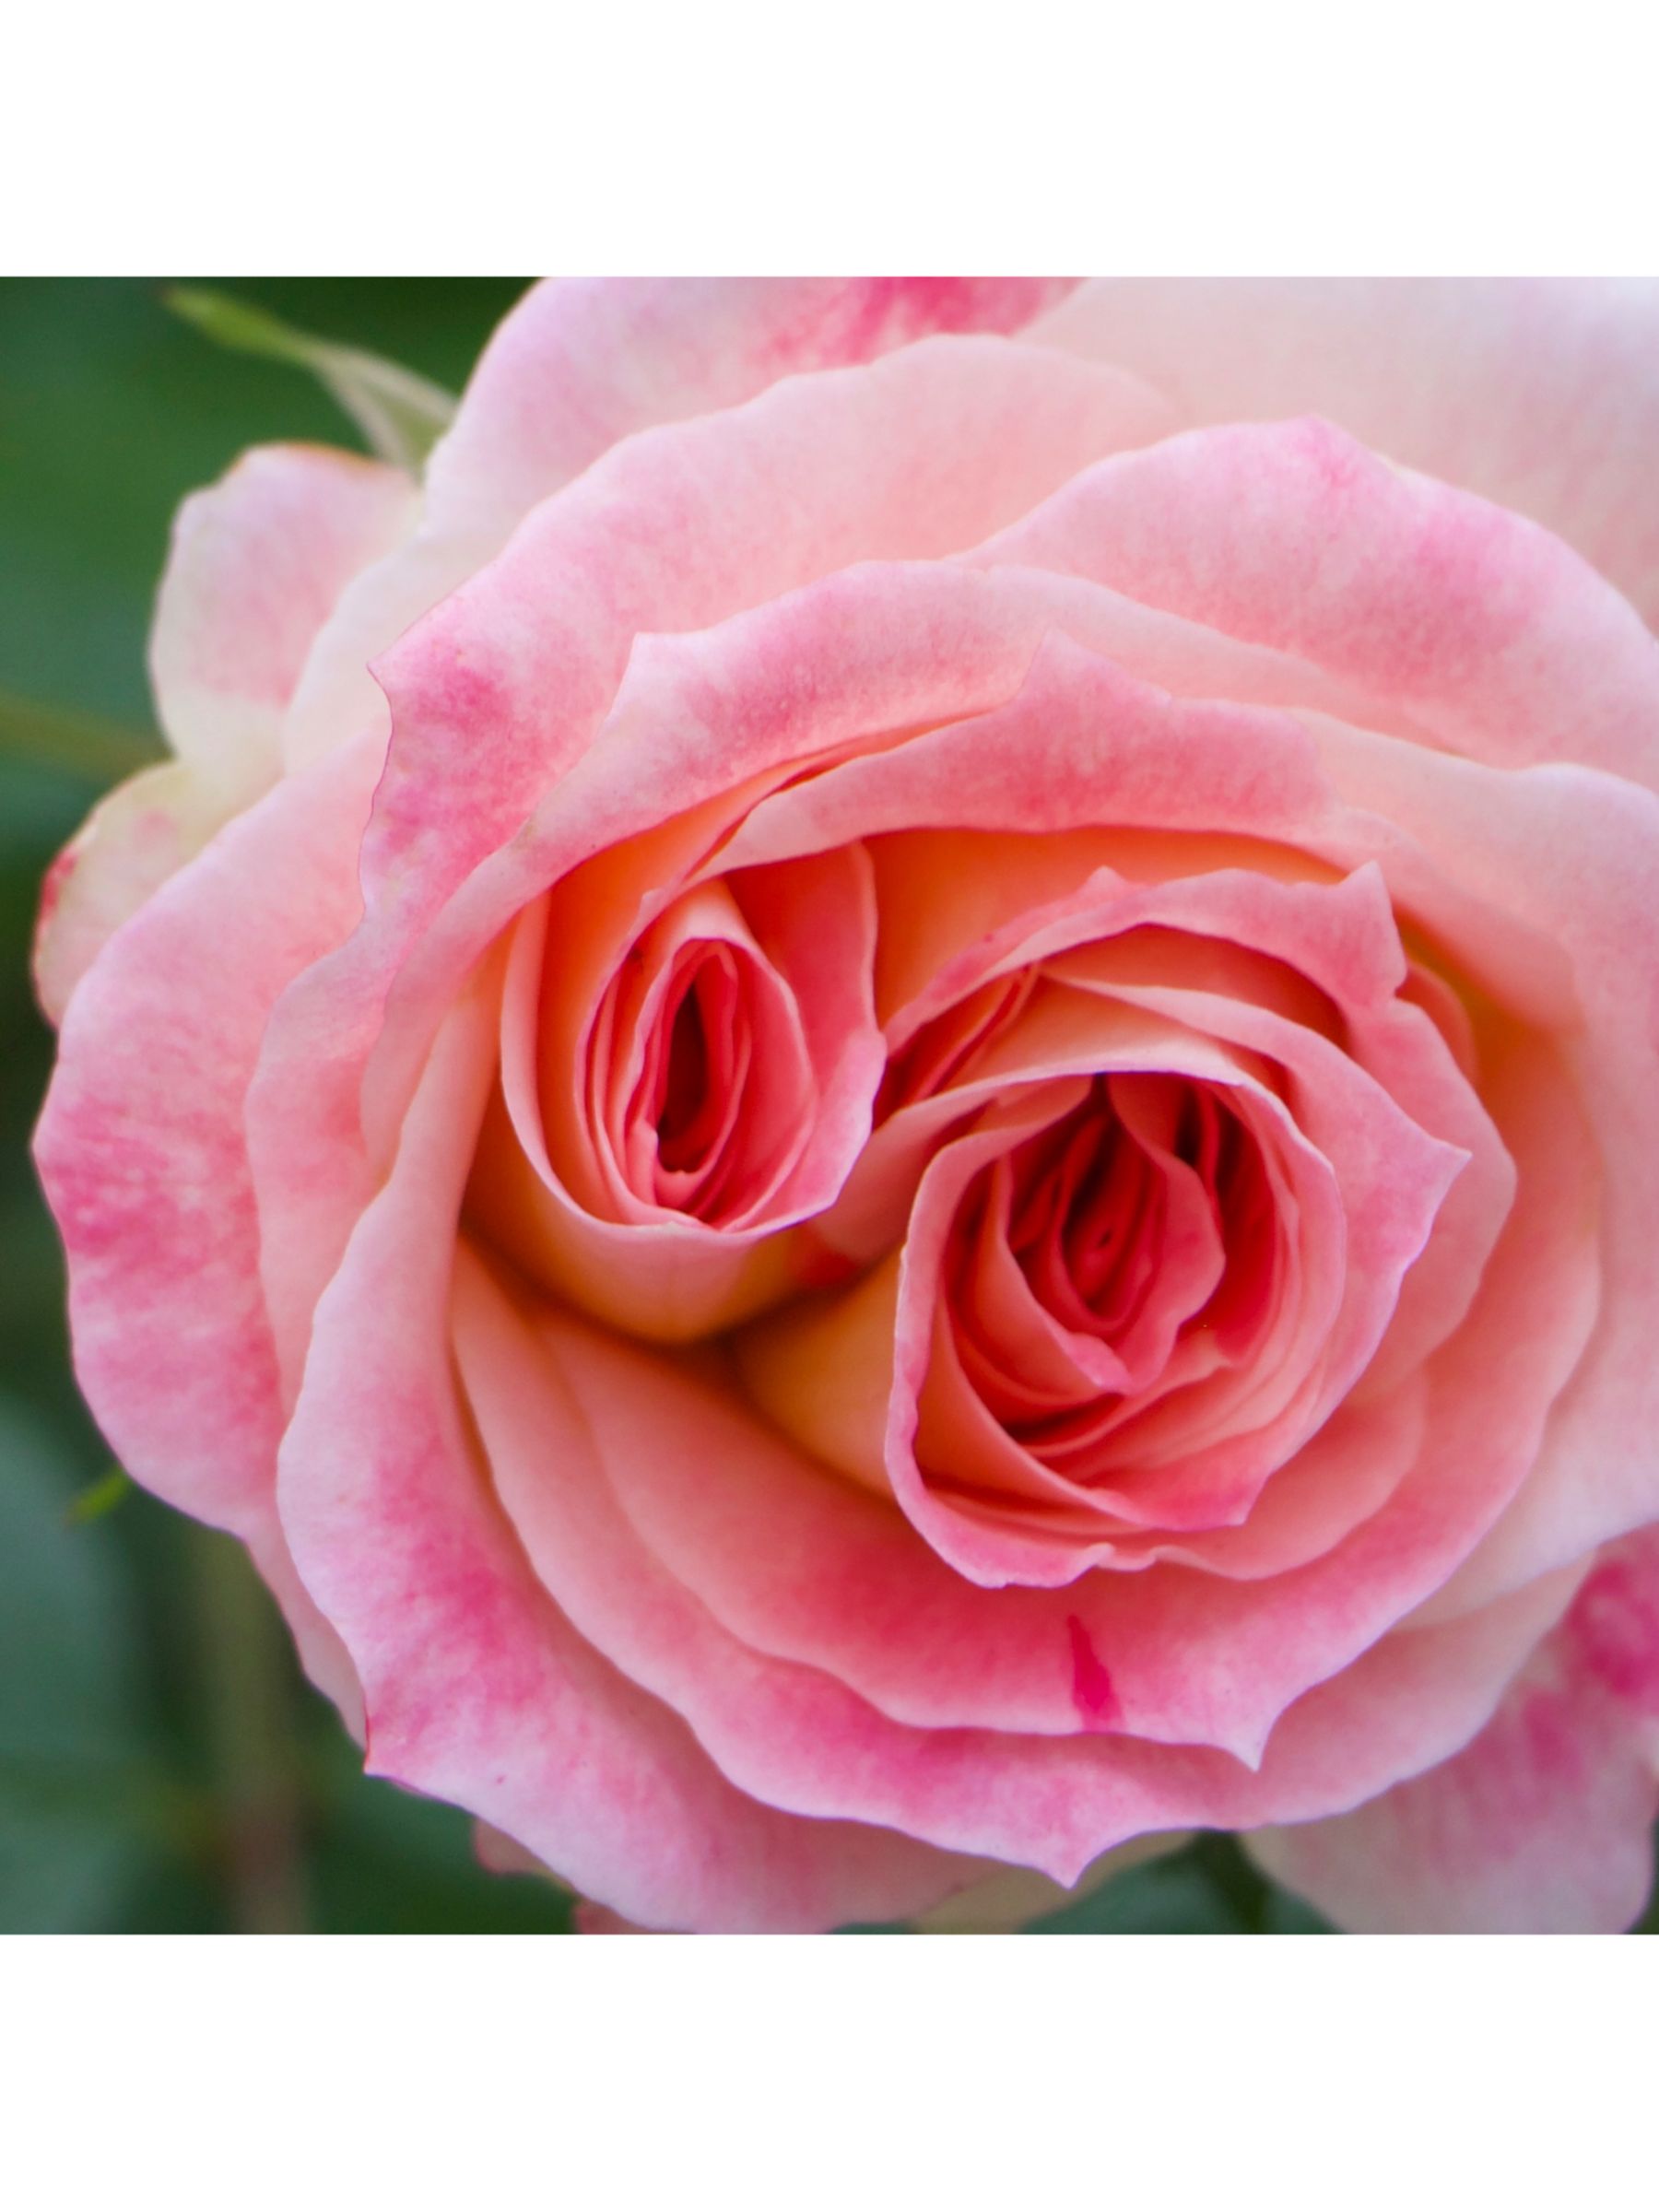 Maison Crivelli Rose SaltifOlia Eau de Parfum, 100ml